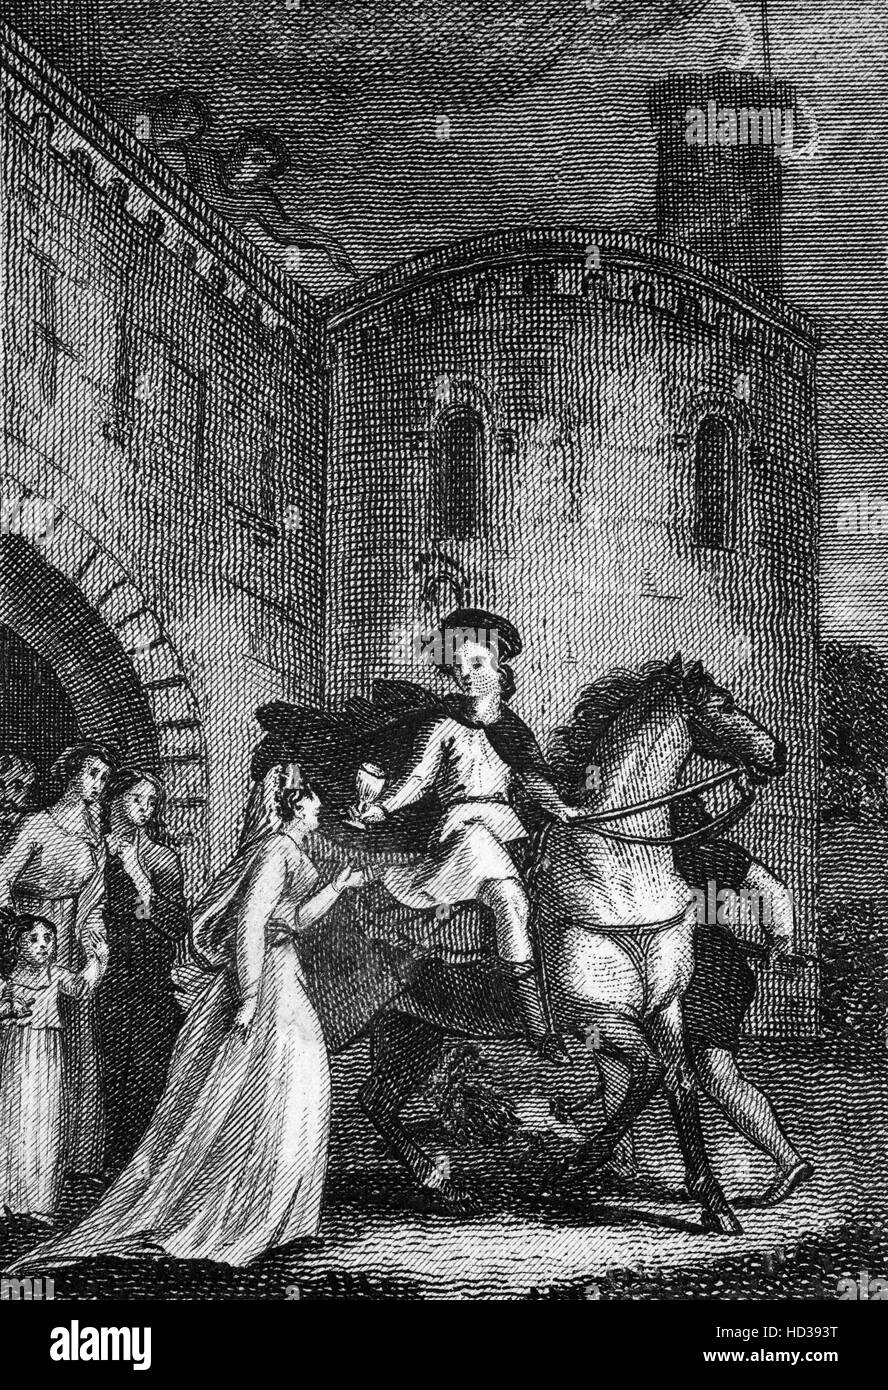 La traición de Elfrida en causar la muerte de Eduardo el mártir, Rey de Inglaterra desde 975 hasta que fue asesinado en 978. Foto de stock